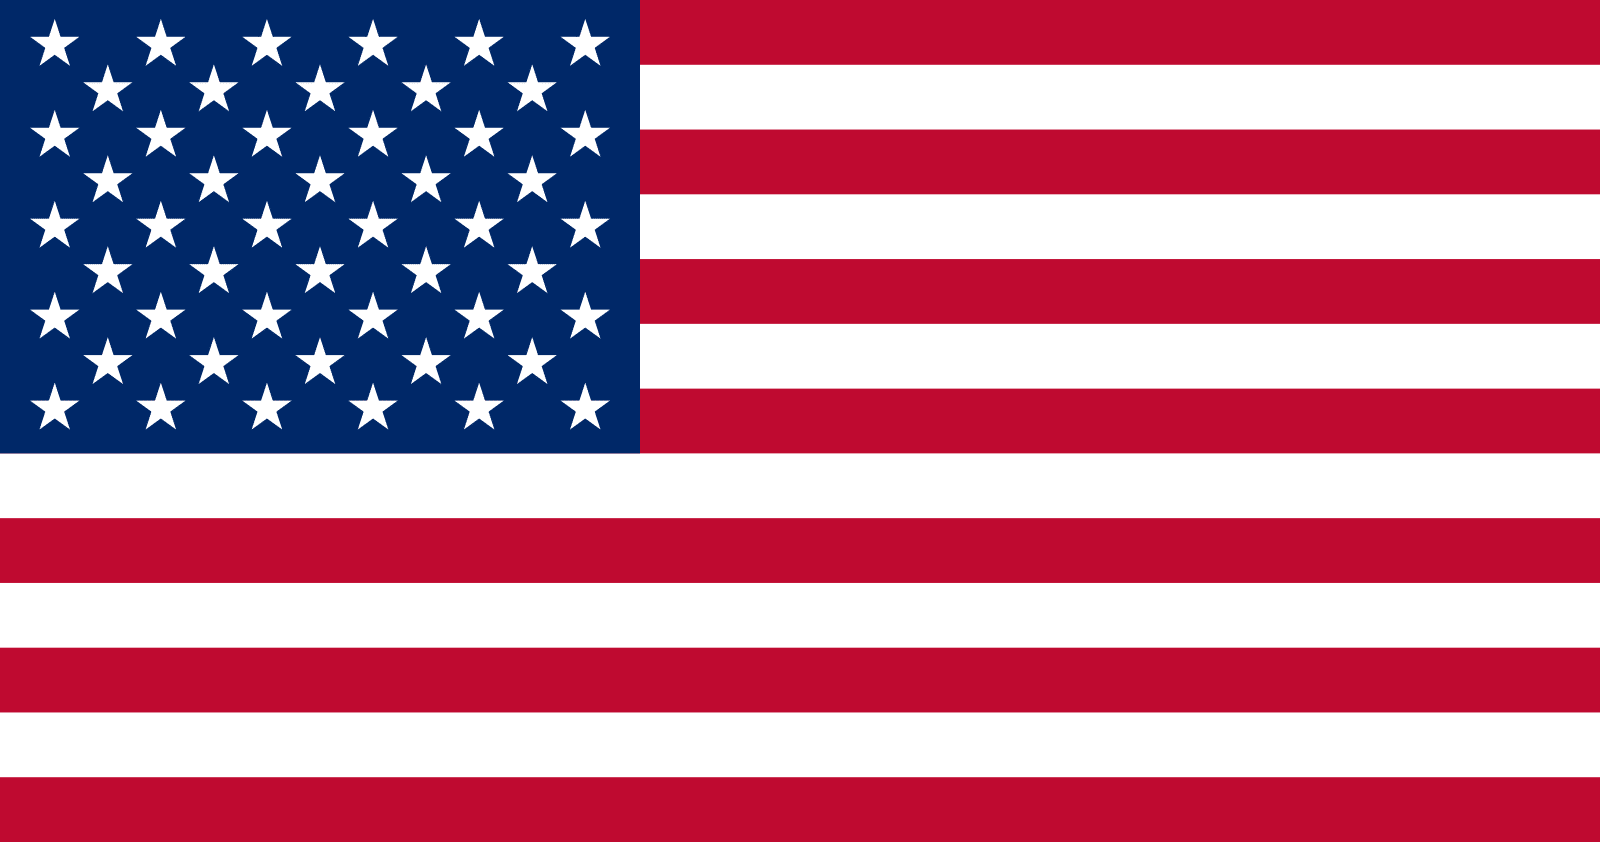 Ameerika lipp